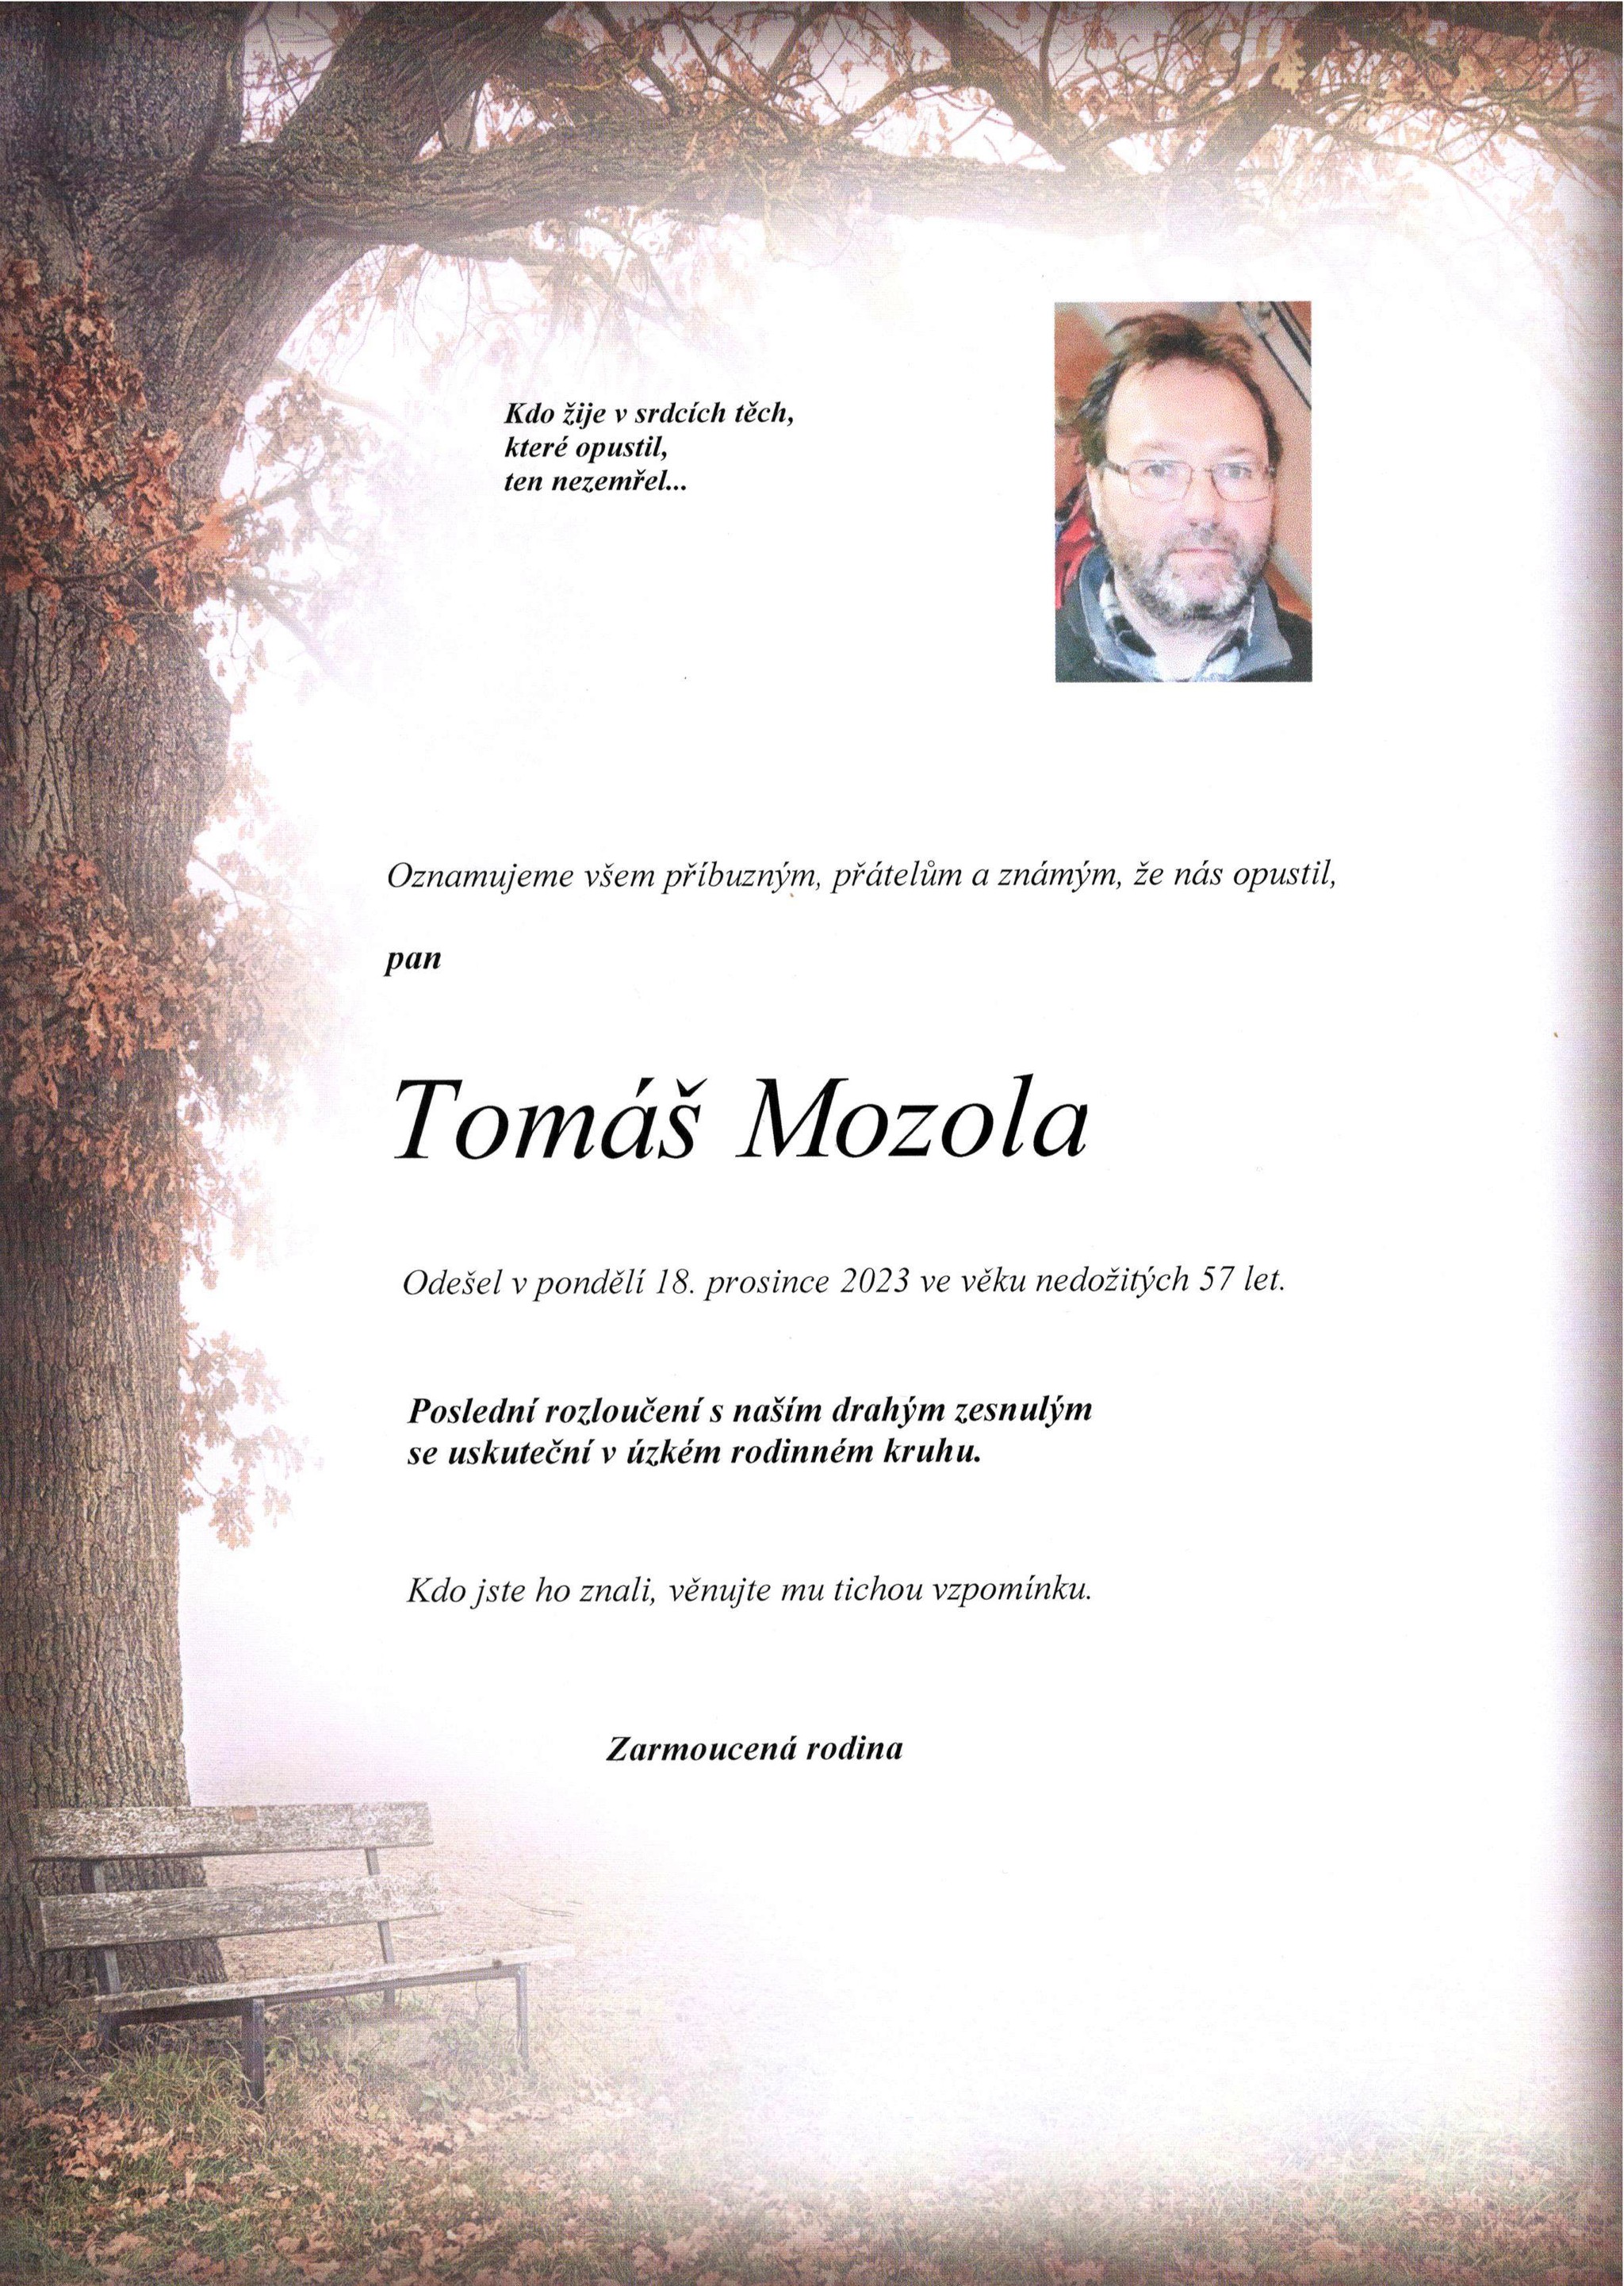 Tomáš Mozola